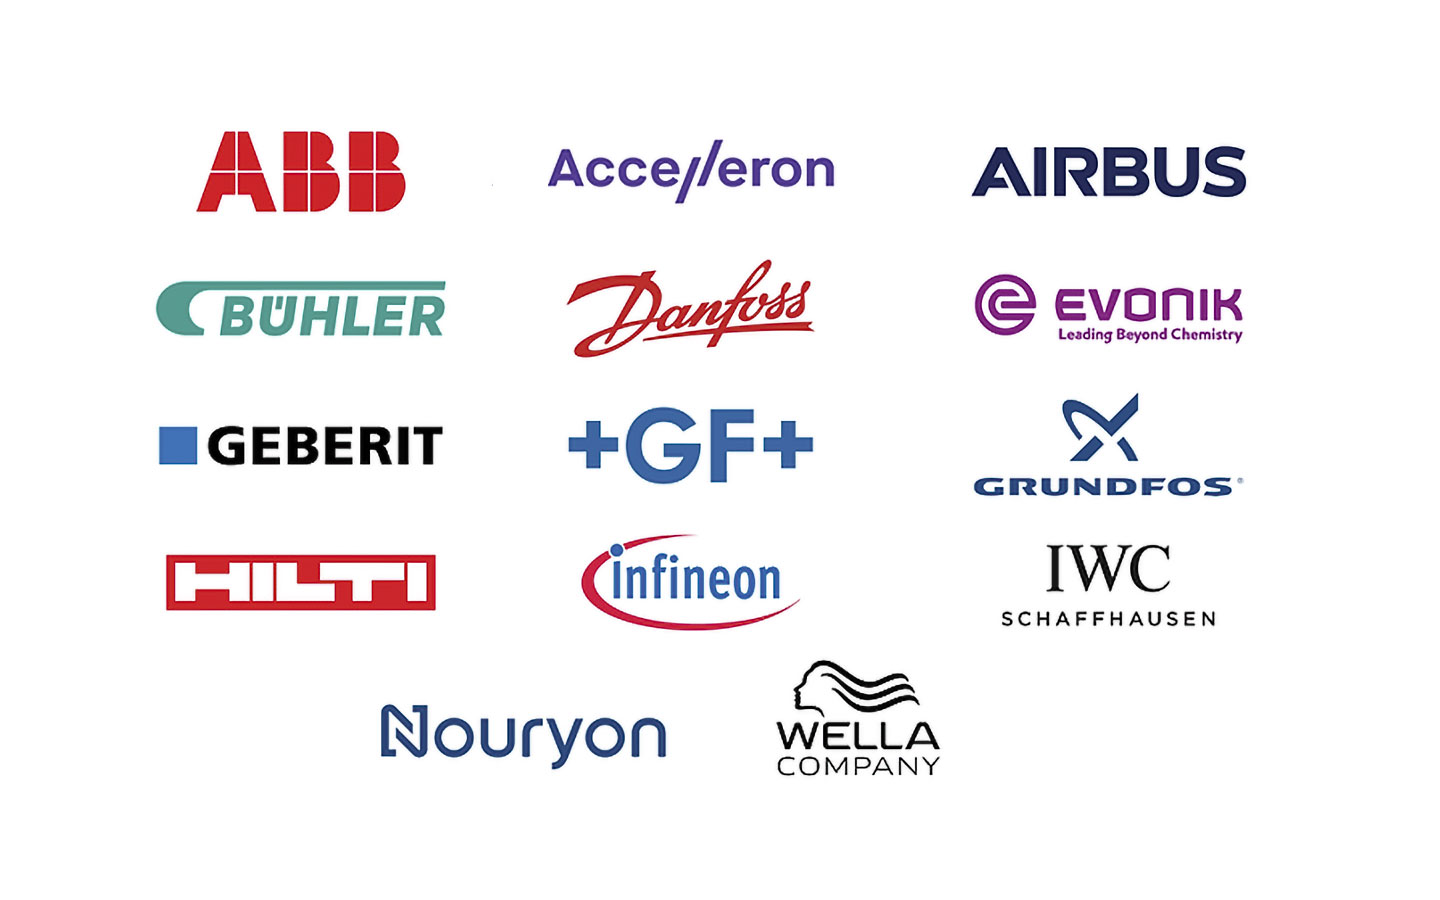 ABB - Accelleron - Airbus - Buhler - Danfoss - Evonik - Geberit - GF - Grundfos - Hilti - Infineon - IWC Schaffhausen - Nouryon - Wella